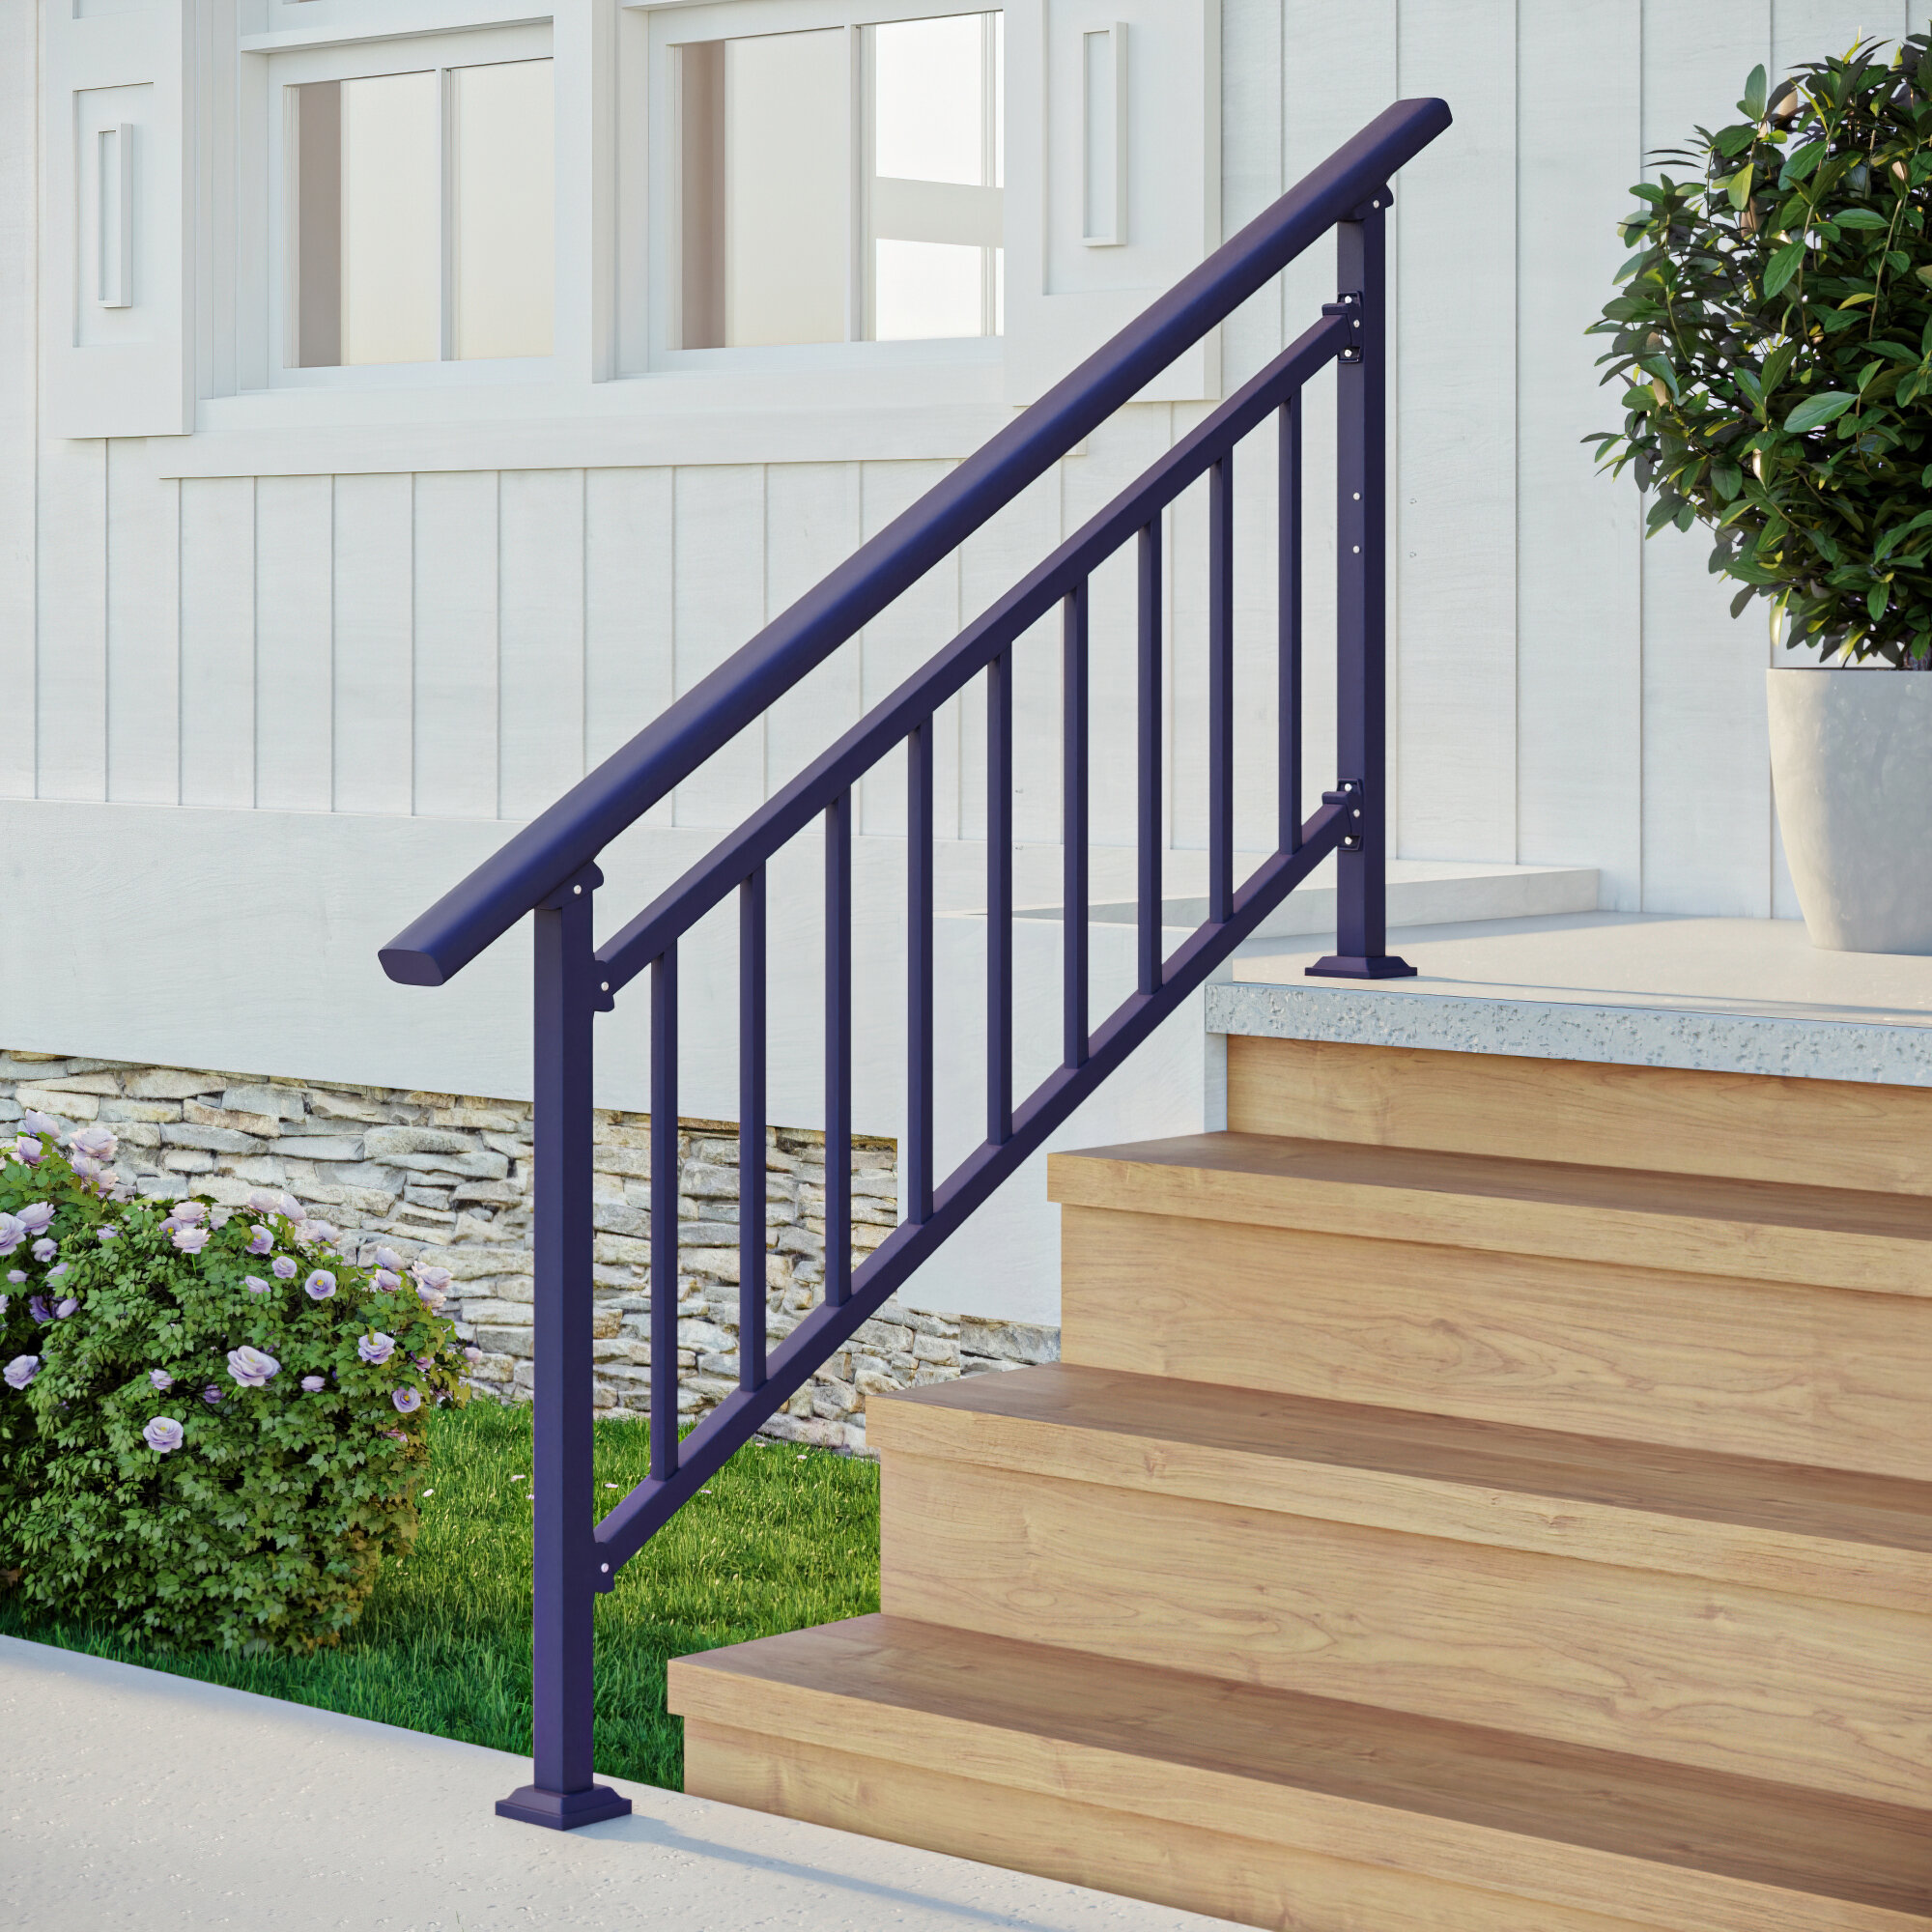 Cr Home 3 Ft H X 4 6 Ft W Cr Handrail Kits Guardrail Steps Metal Stair Railing Reviews Wayfair